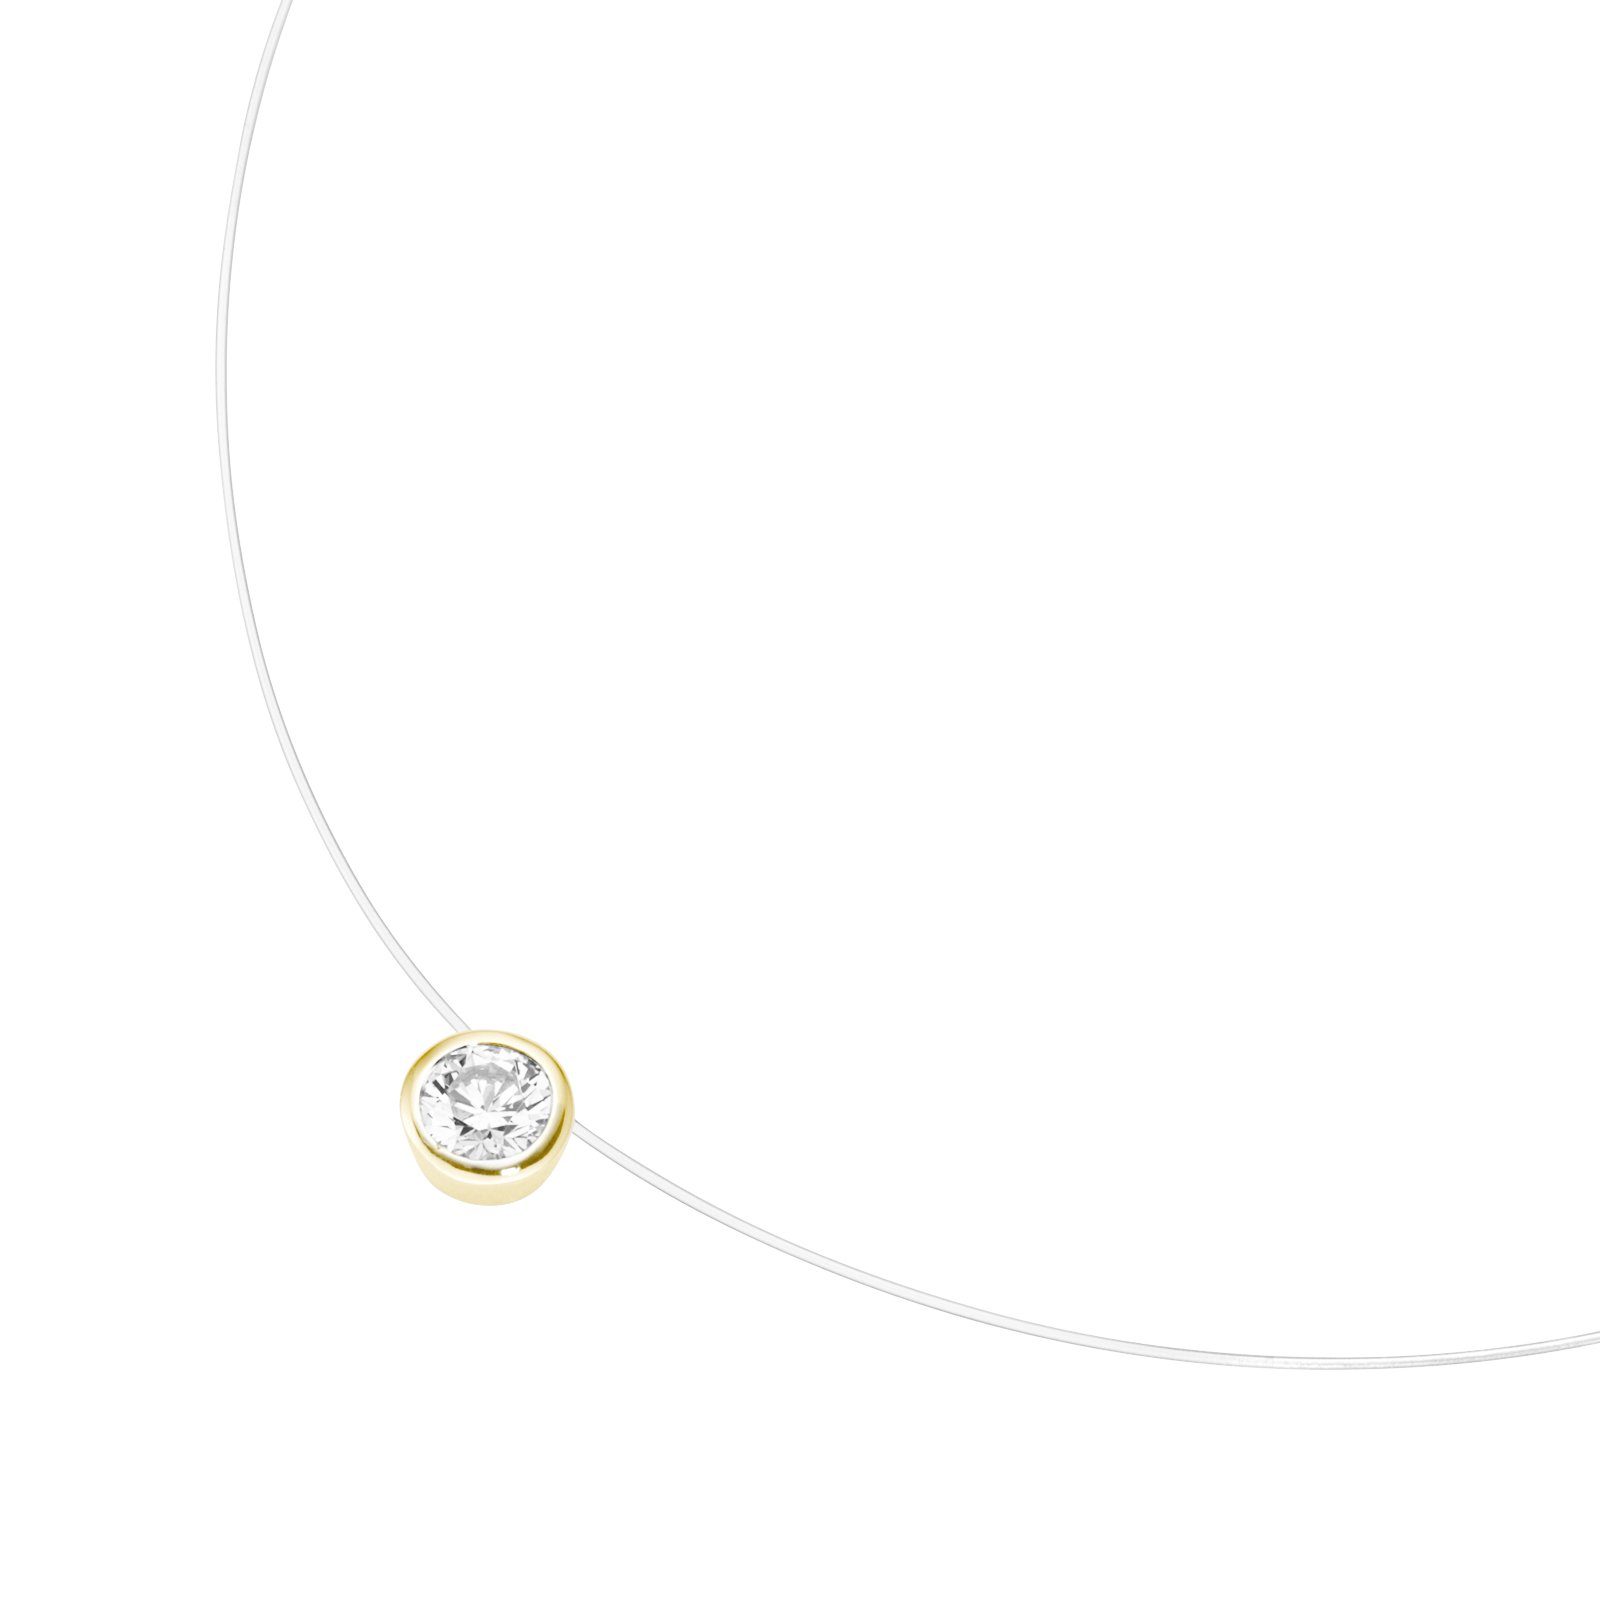 Smart Jewel Collier schwebender Stein, Zirkonia, Silber 925, 1 weißer  Zirkonia mit Zarge gefasst, ca. 7 mm groß